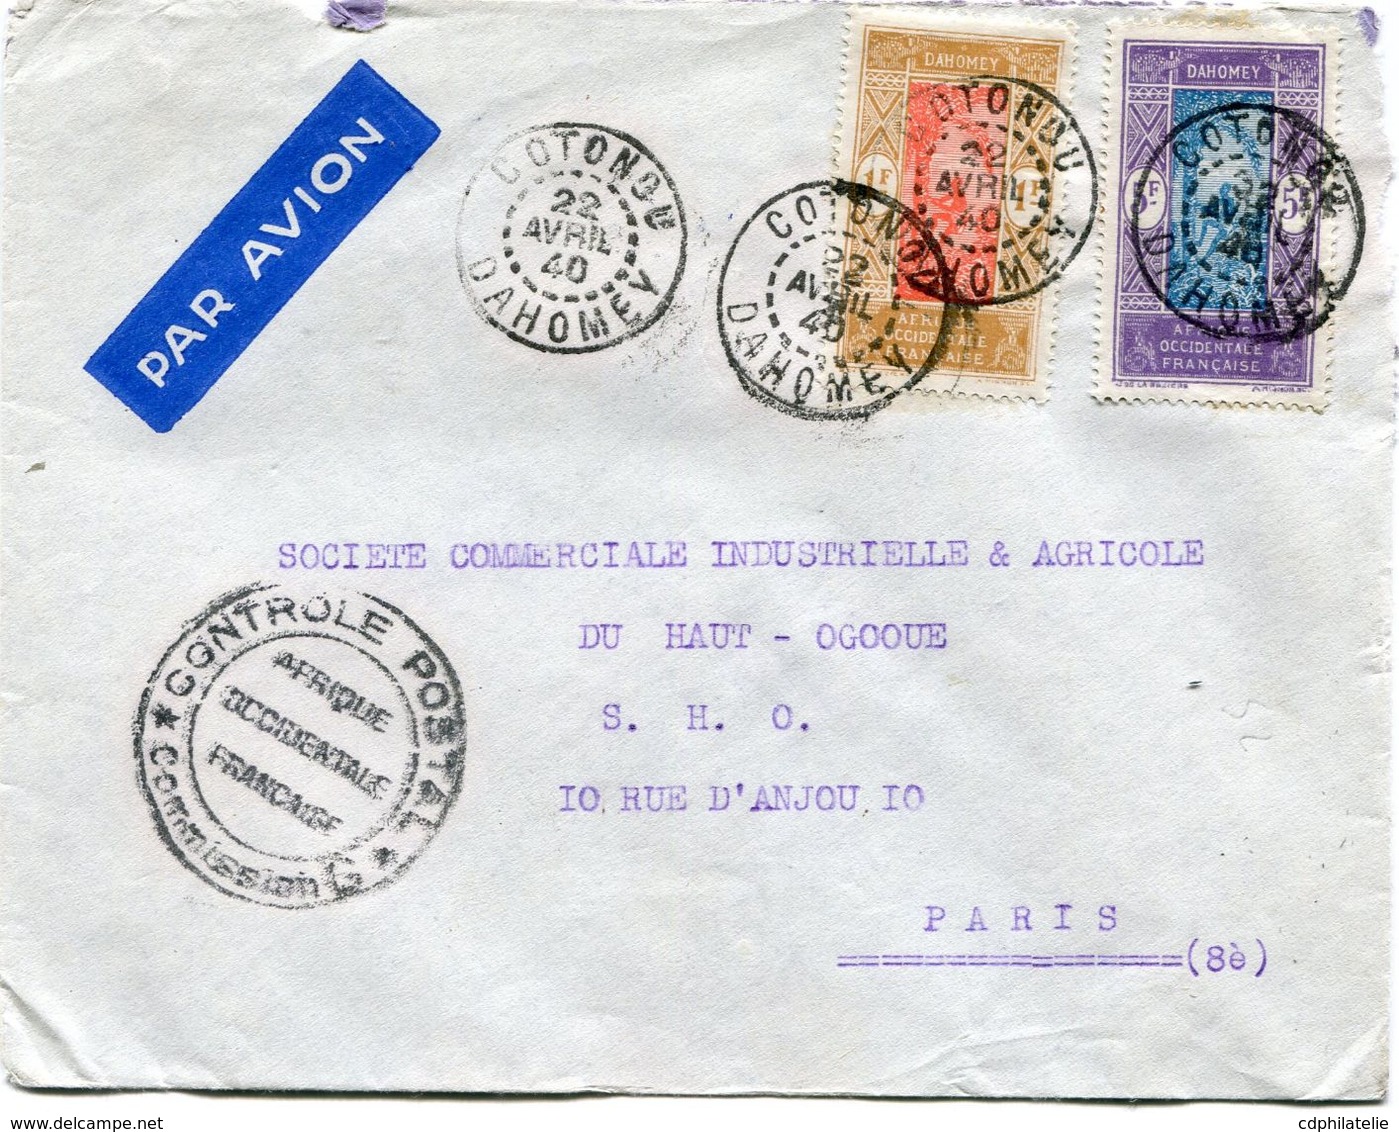 DAHOMEY LETTRE PAR AVION CENSUREE DEPART COTONOU 22 AVRIL 40 DAHOMEY POUR LA FRANCE - Storia Postale